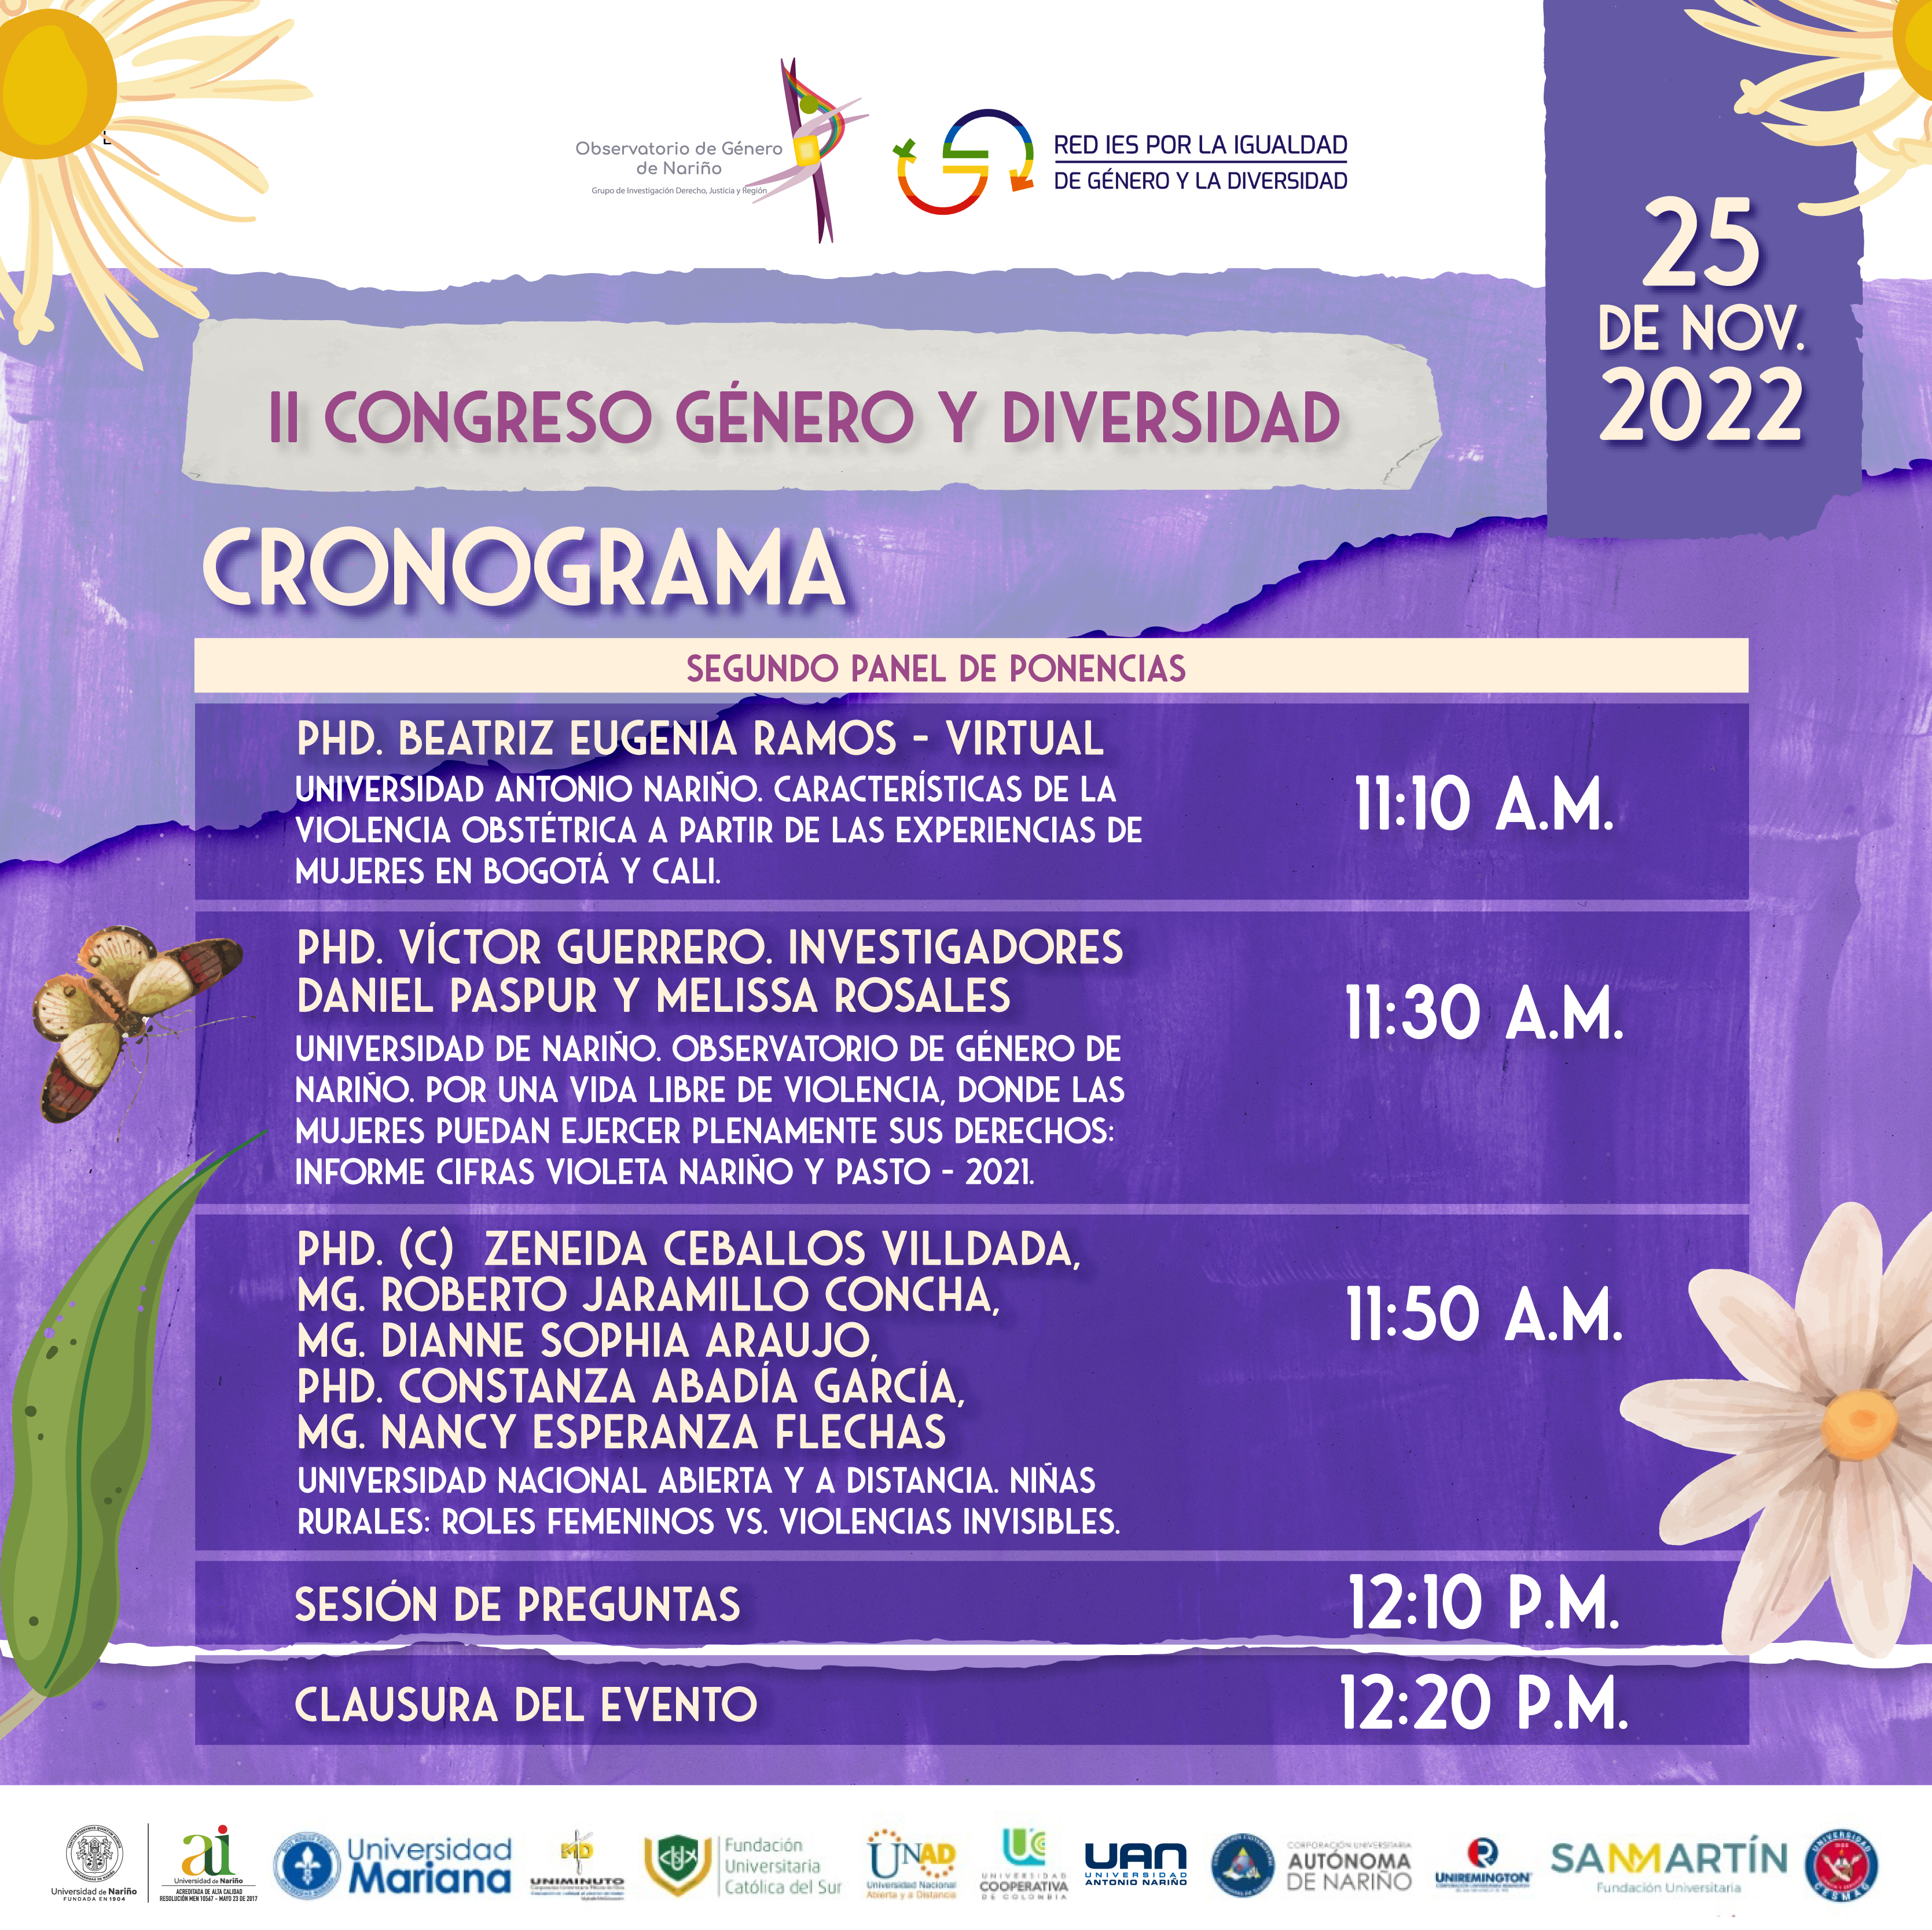 UDENAR-PERIODICO-II-Congreso-Genero-Diversidad-cronograma-3